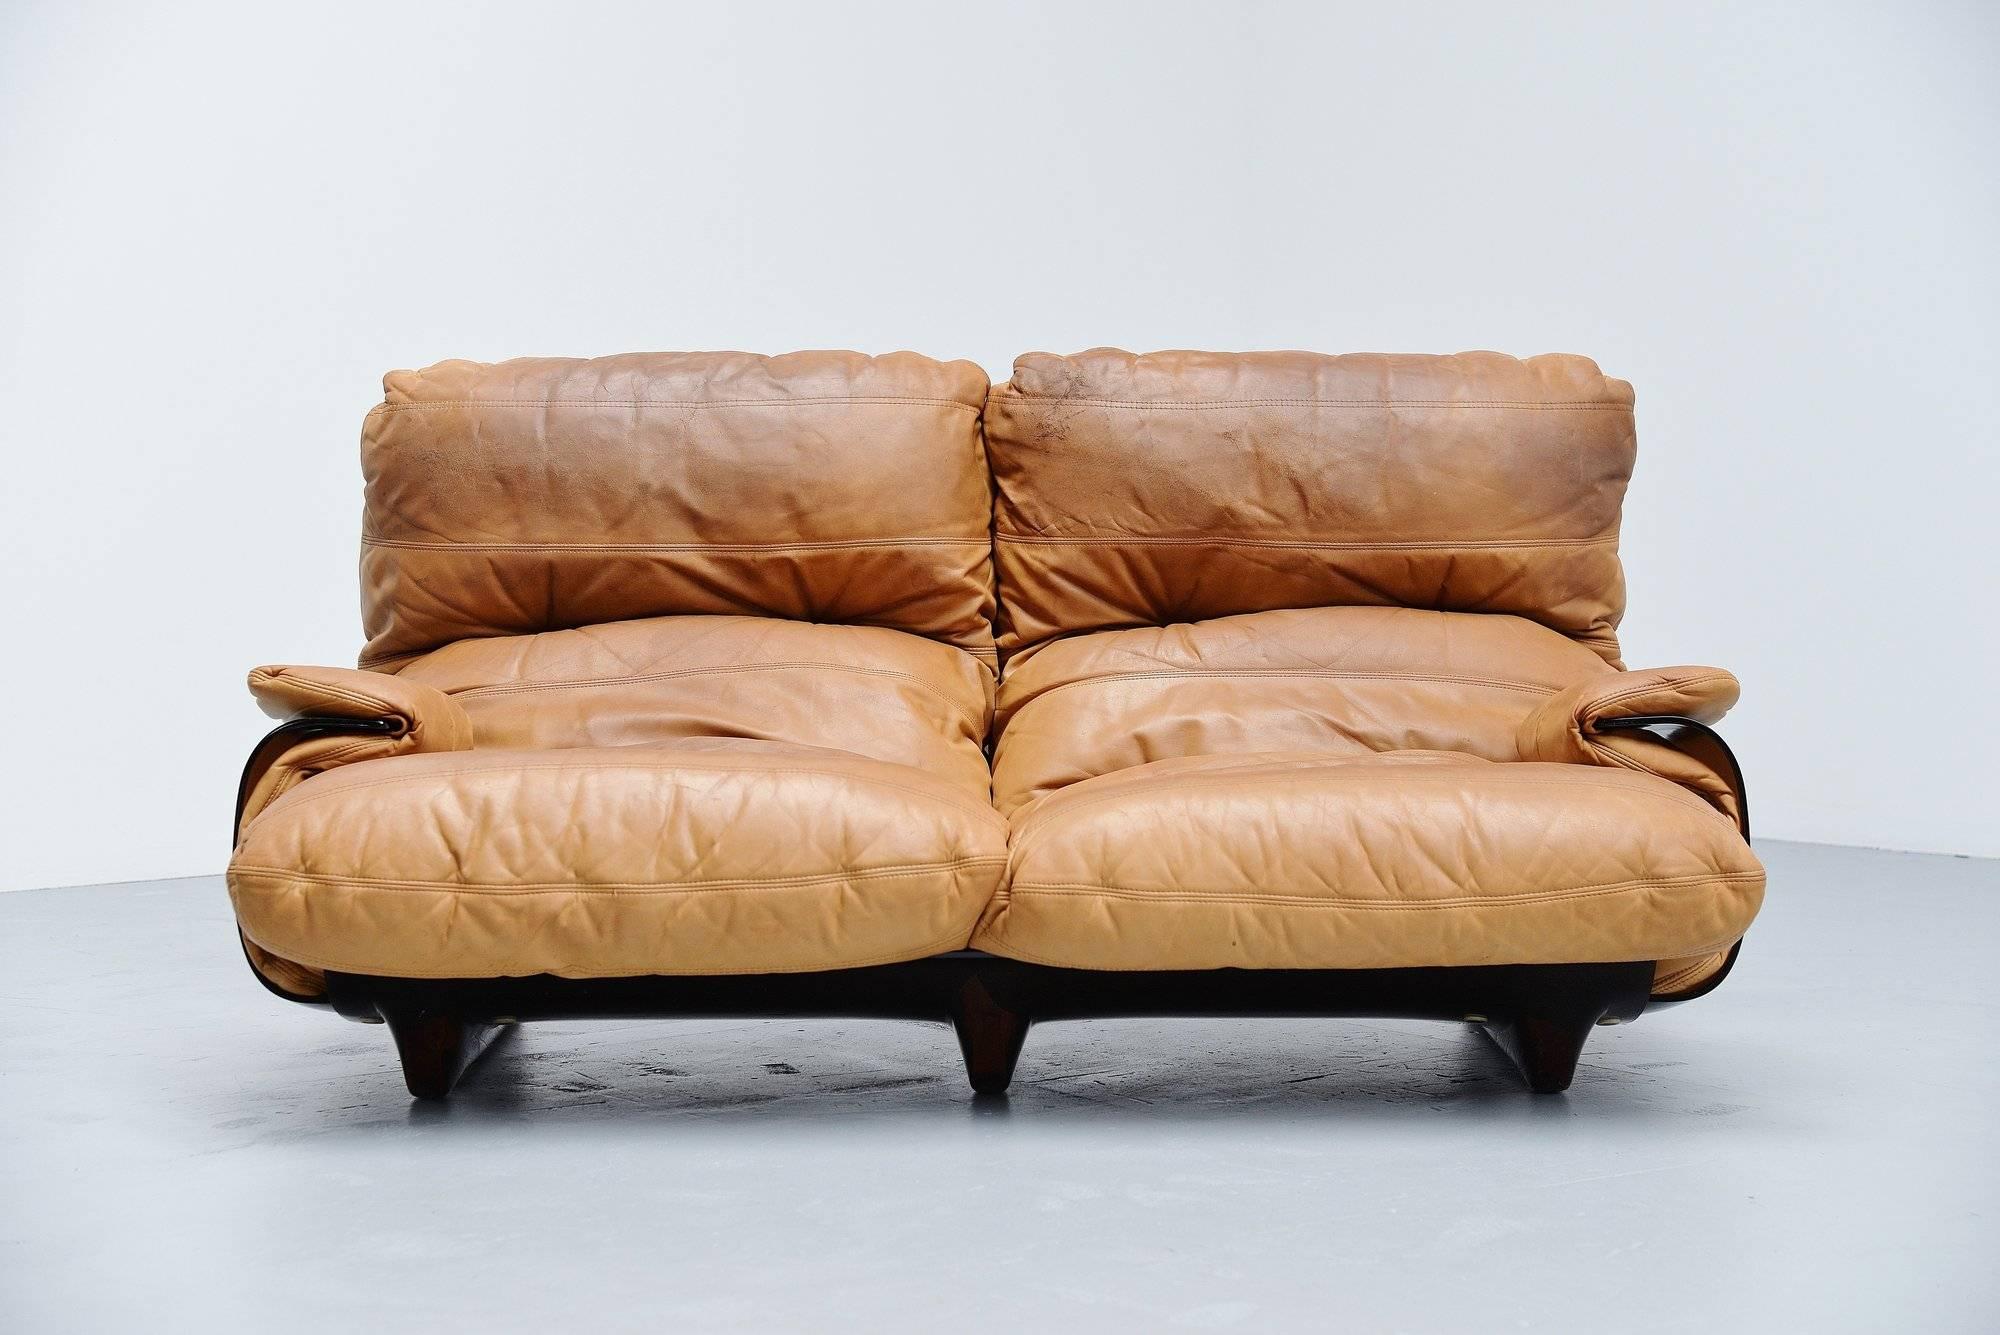 Canapé de salon bas très confortable conçu par Michel Ducaroy et fabriqué par Ligne Roset, France 1970. Ce canapé est issu de la série 'Marsala' et possède un cadre en plexiglas marron avec des coussins confortables en cuir naturel. Les coussins